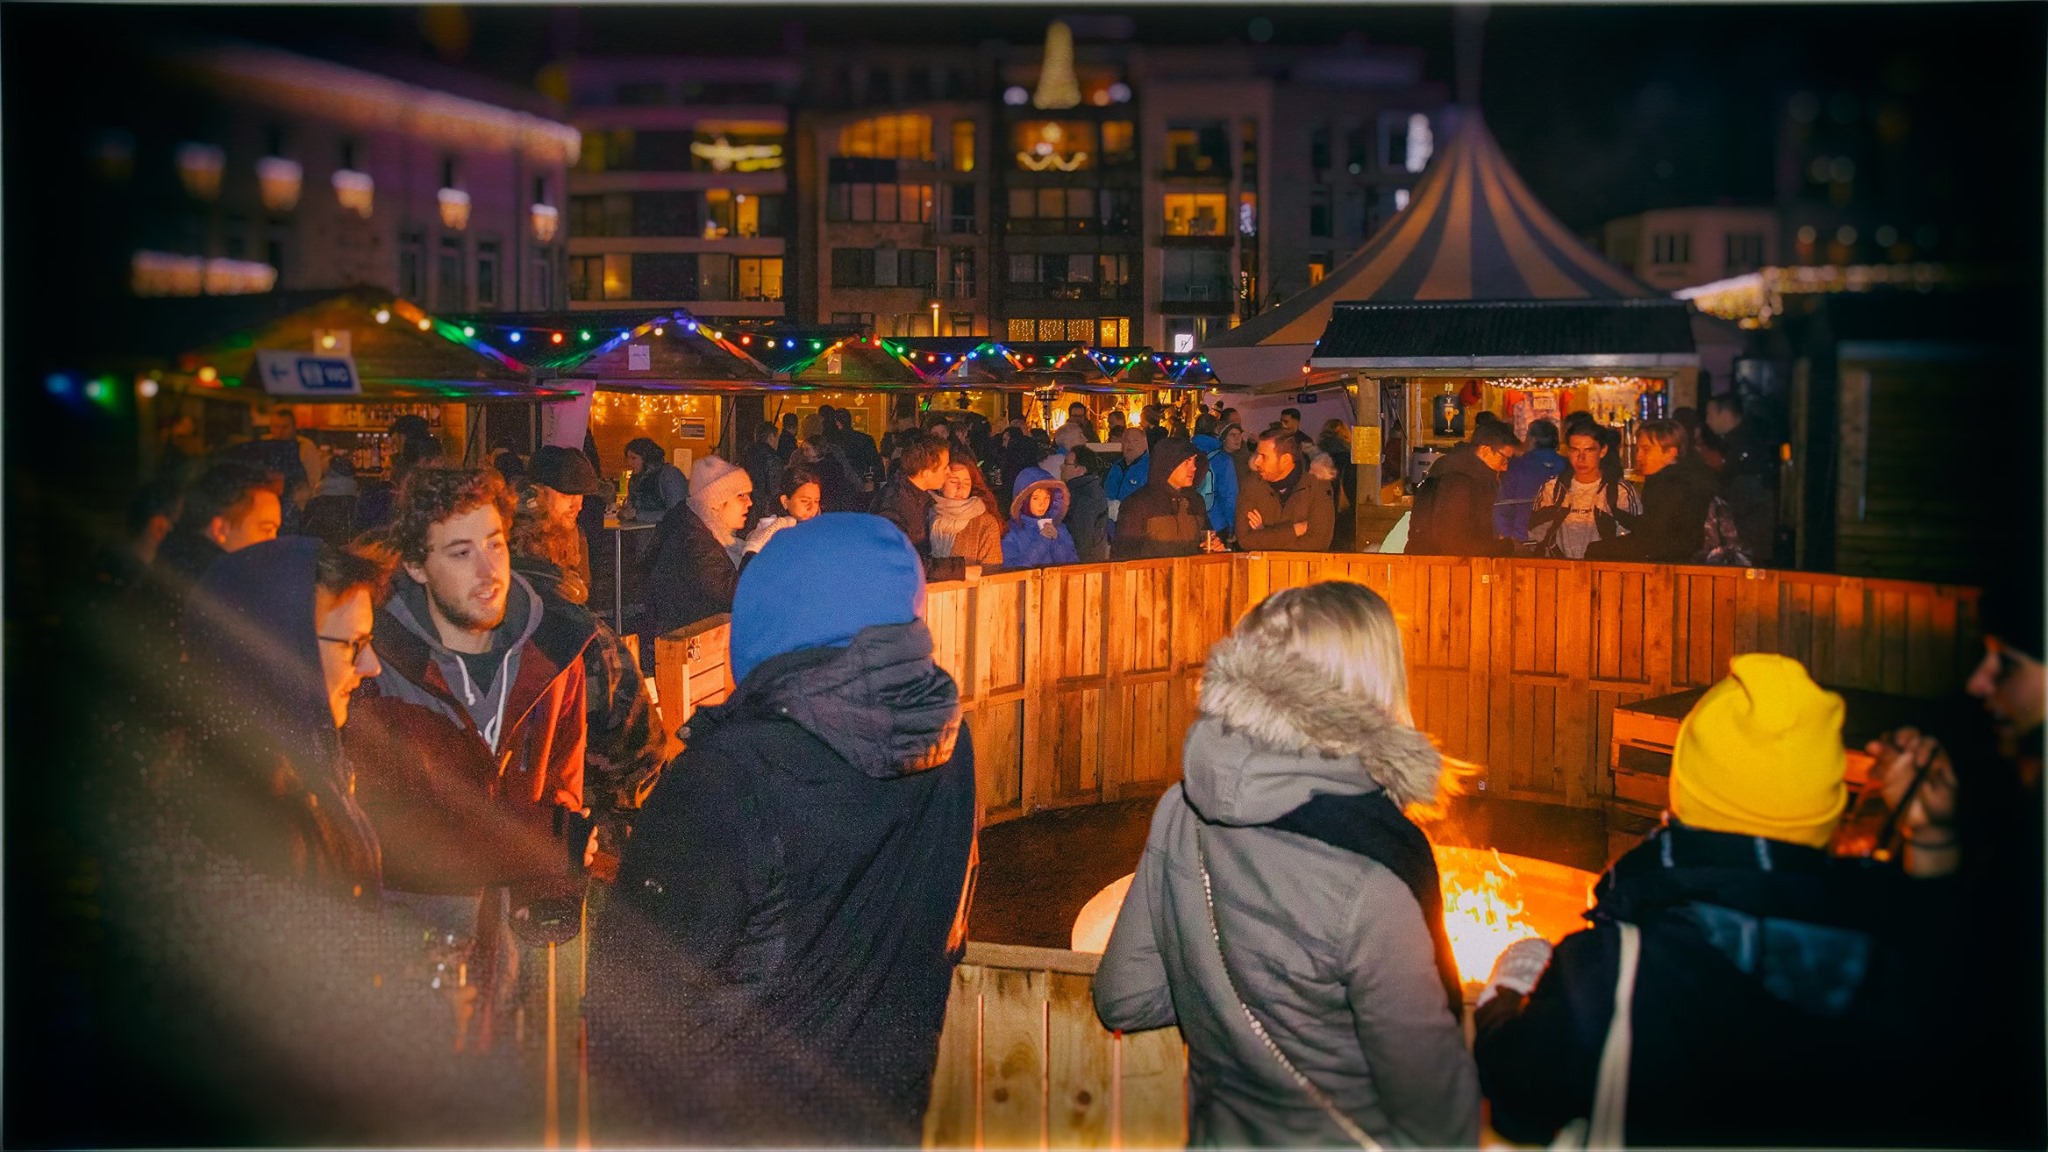 Kerstmarkt Sint-Niklaas 2019